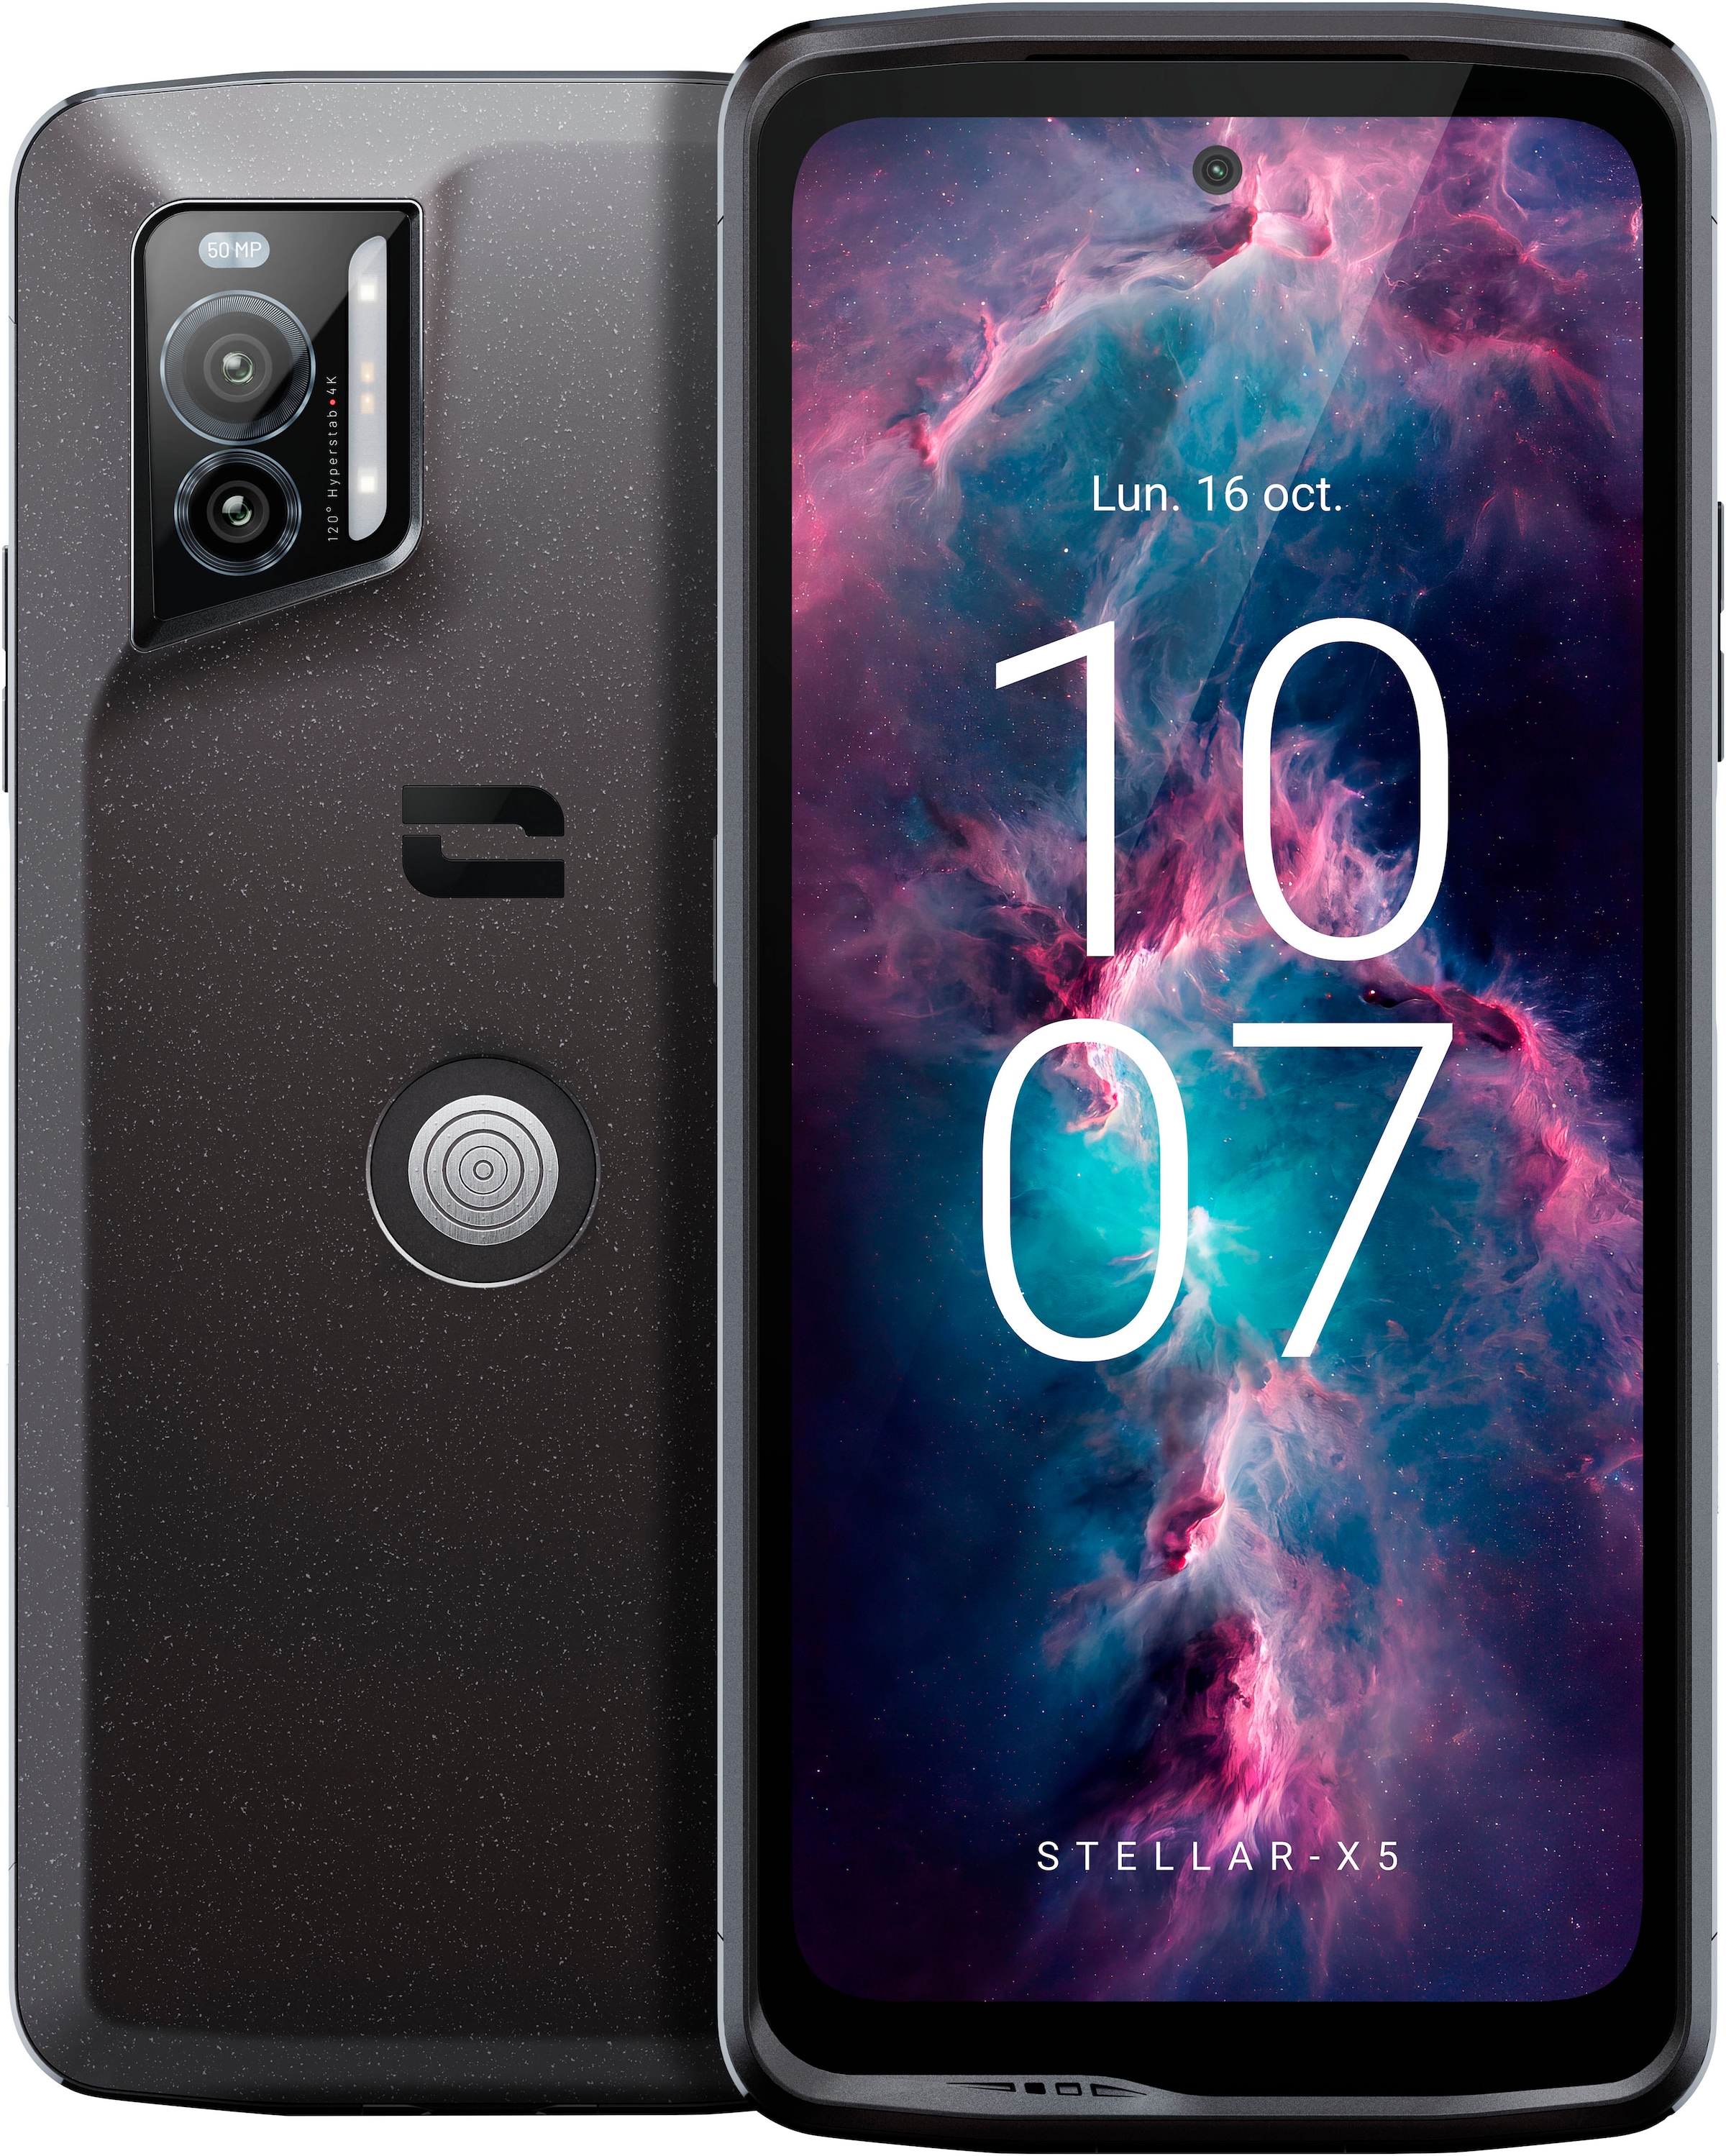 Smartphone »Stellar-X5«, schwarz, 16,48 cm/6,49 Zoll, 128 GB Speicherplatz, 50 MP Kamera